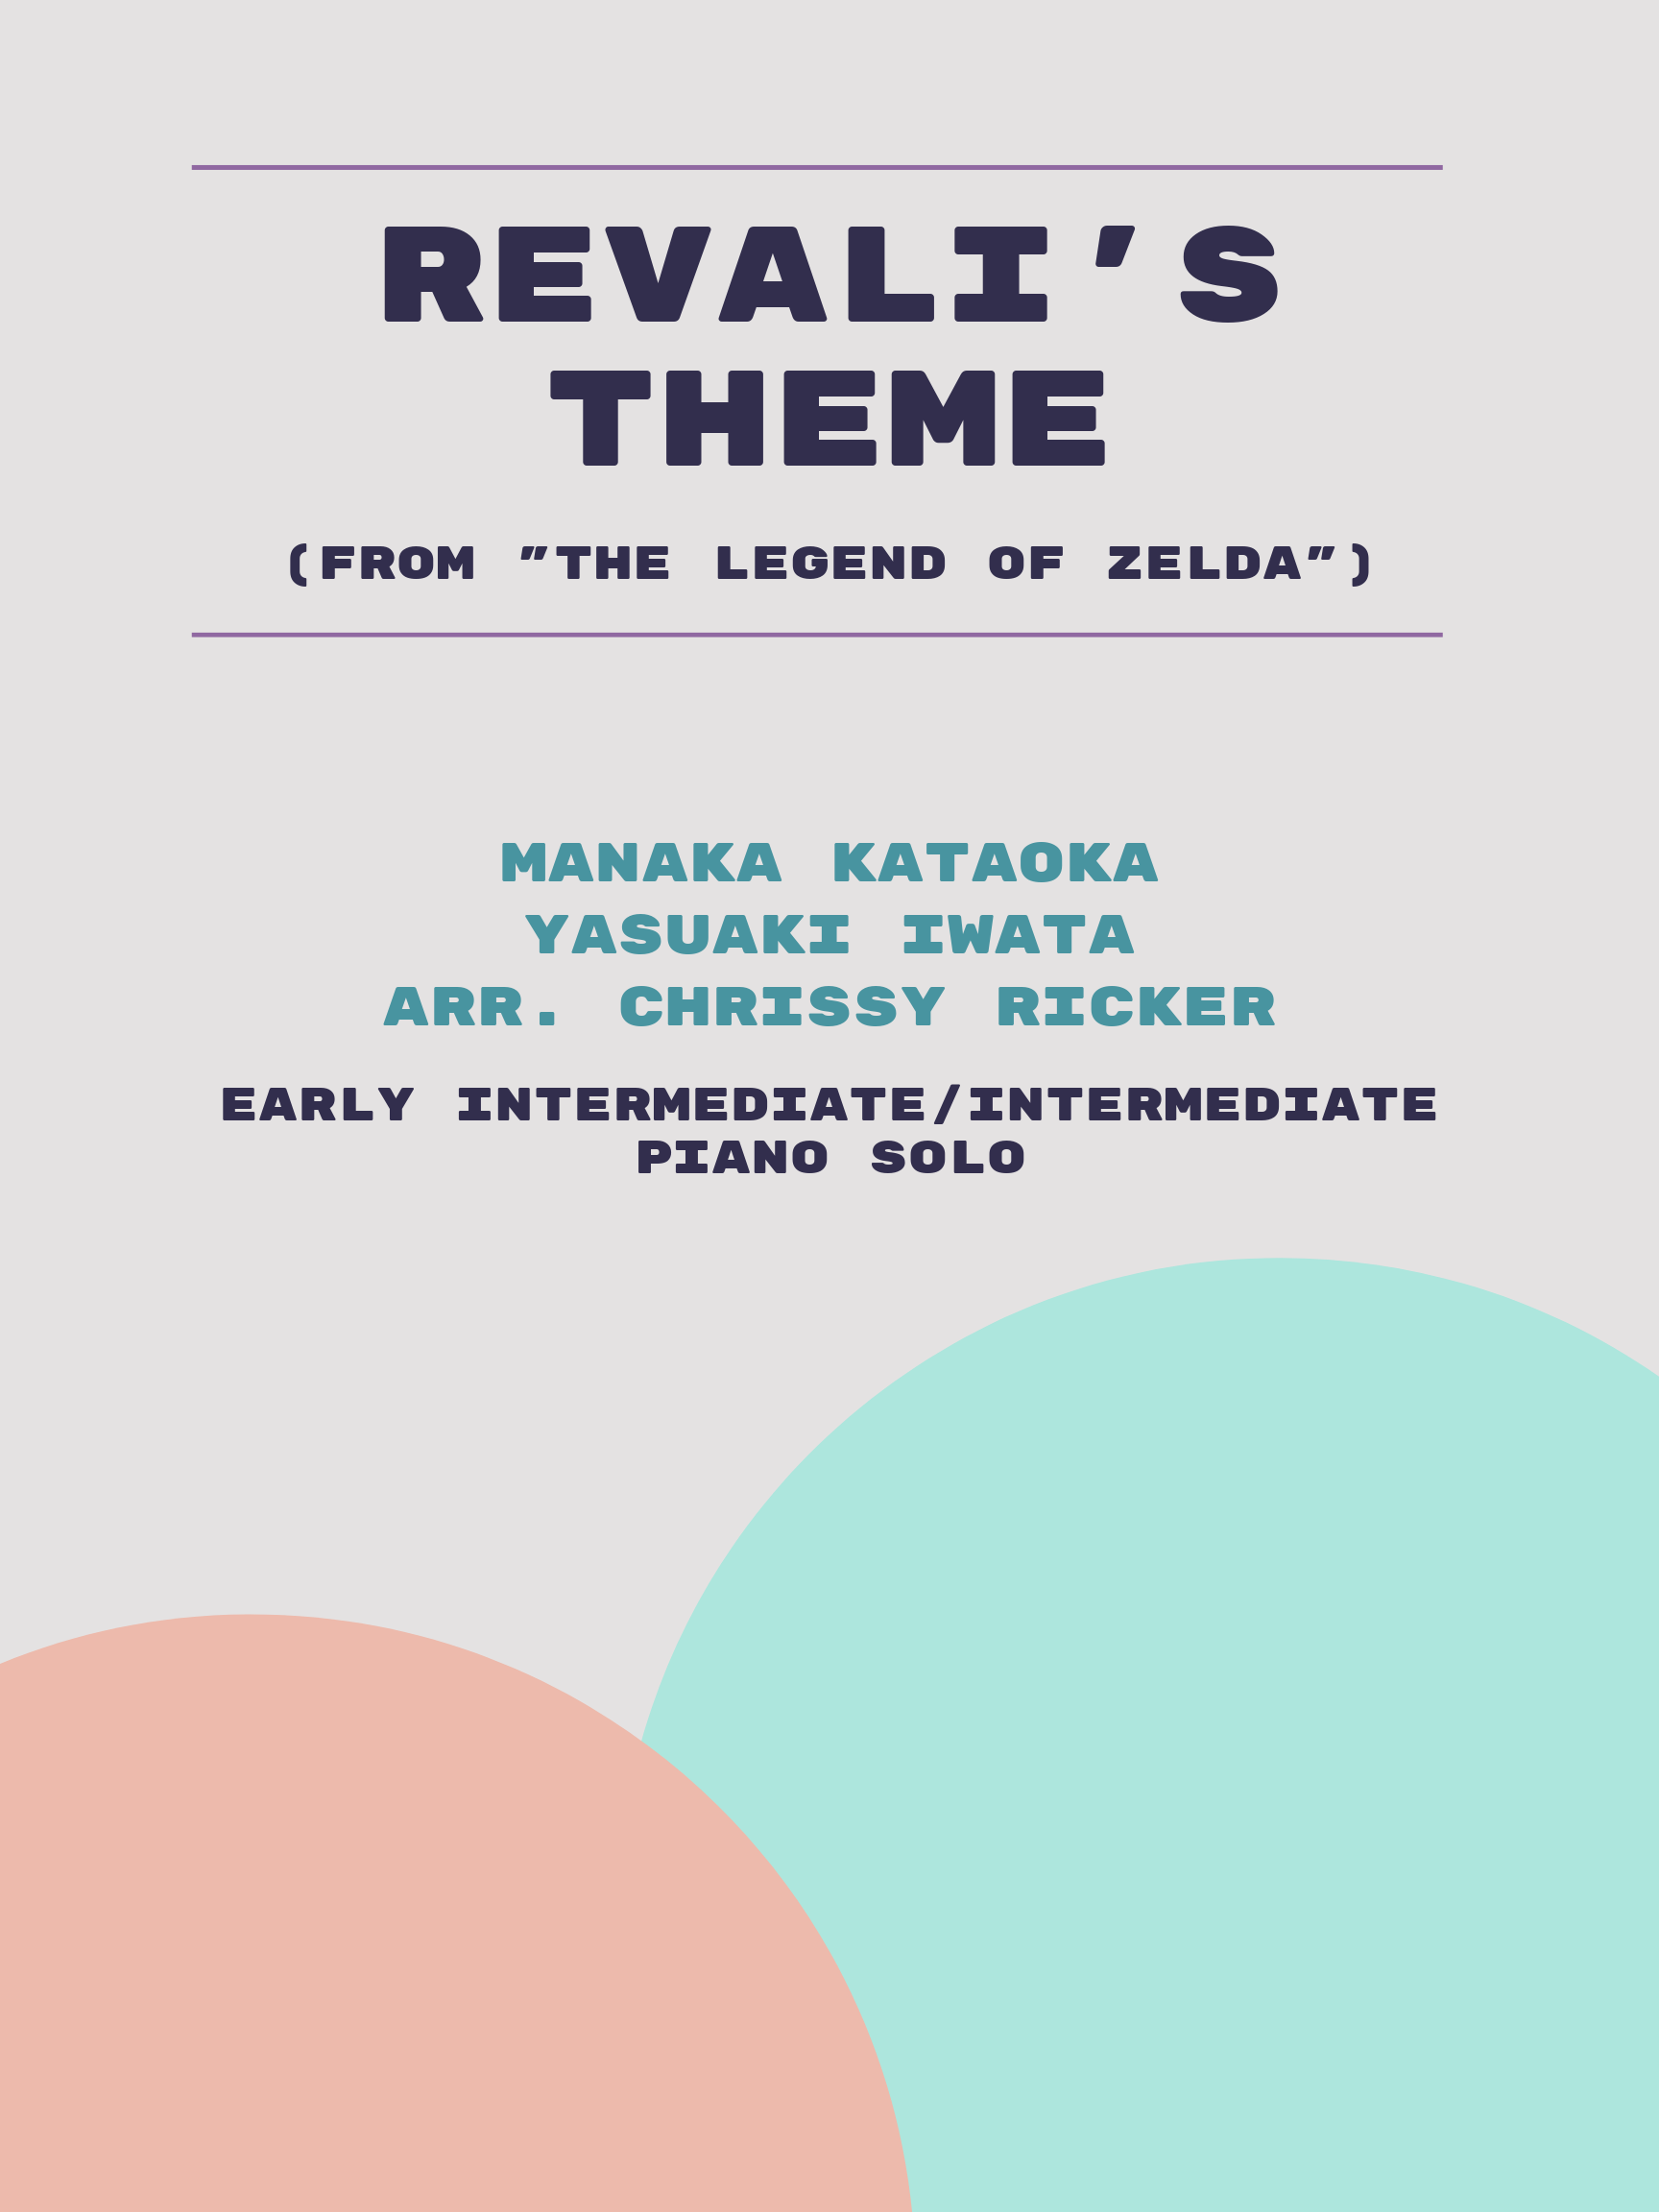 Revali's Theme by Manaka Kataoka, Yasuaki Iwata